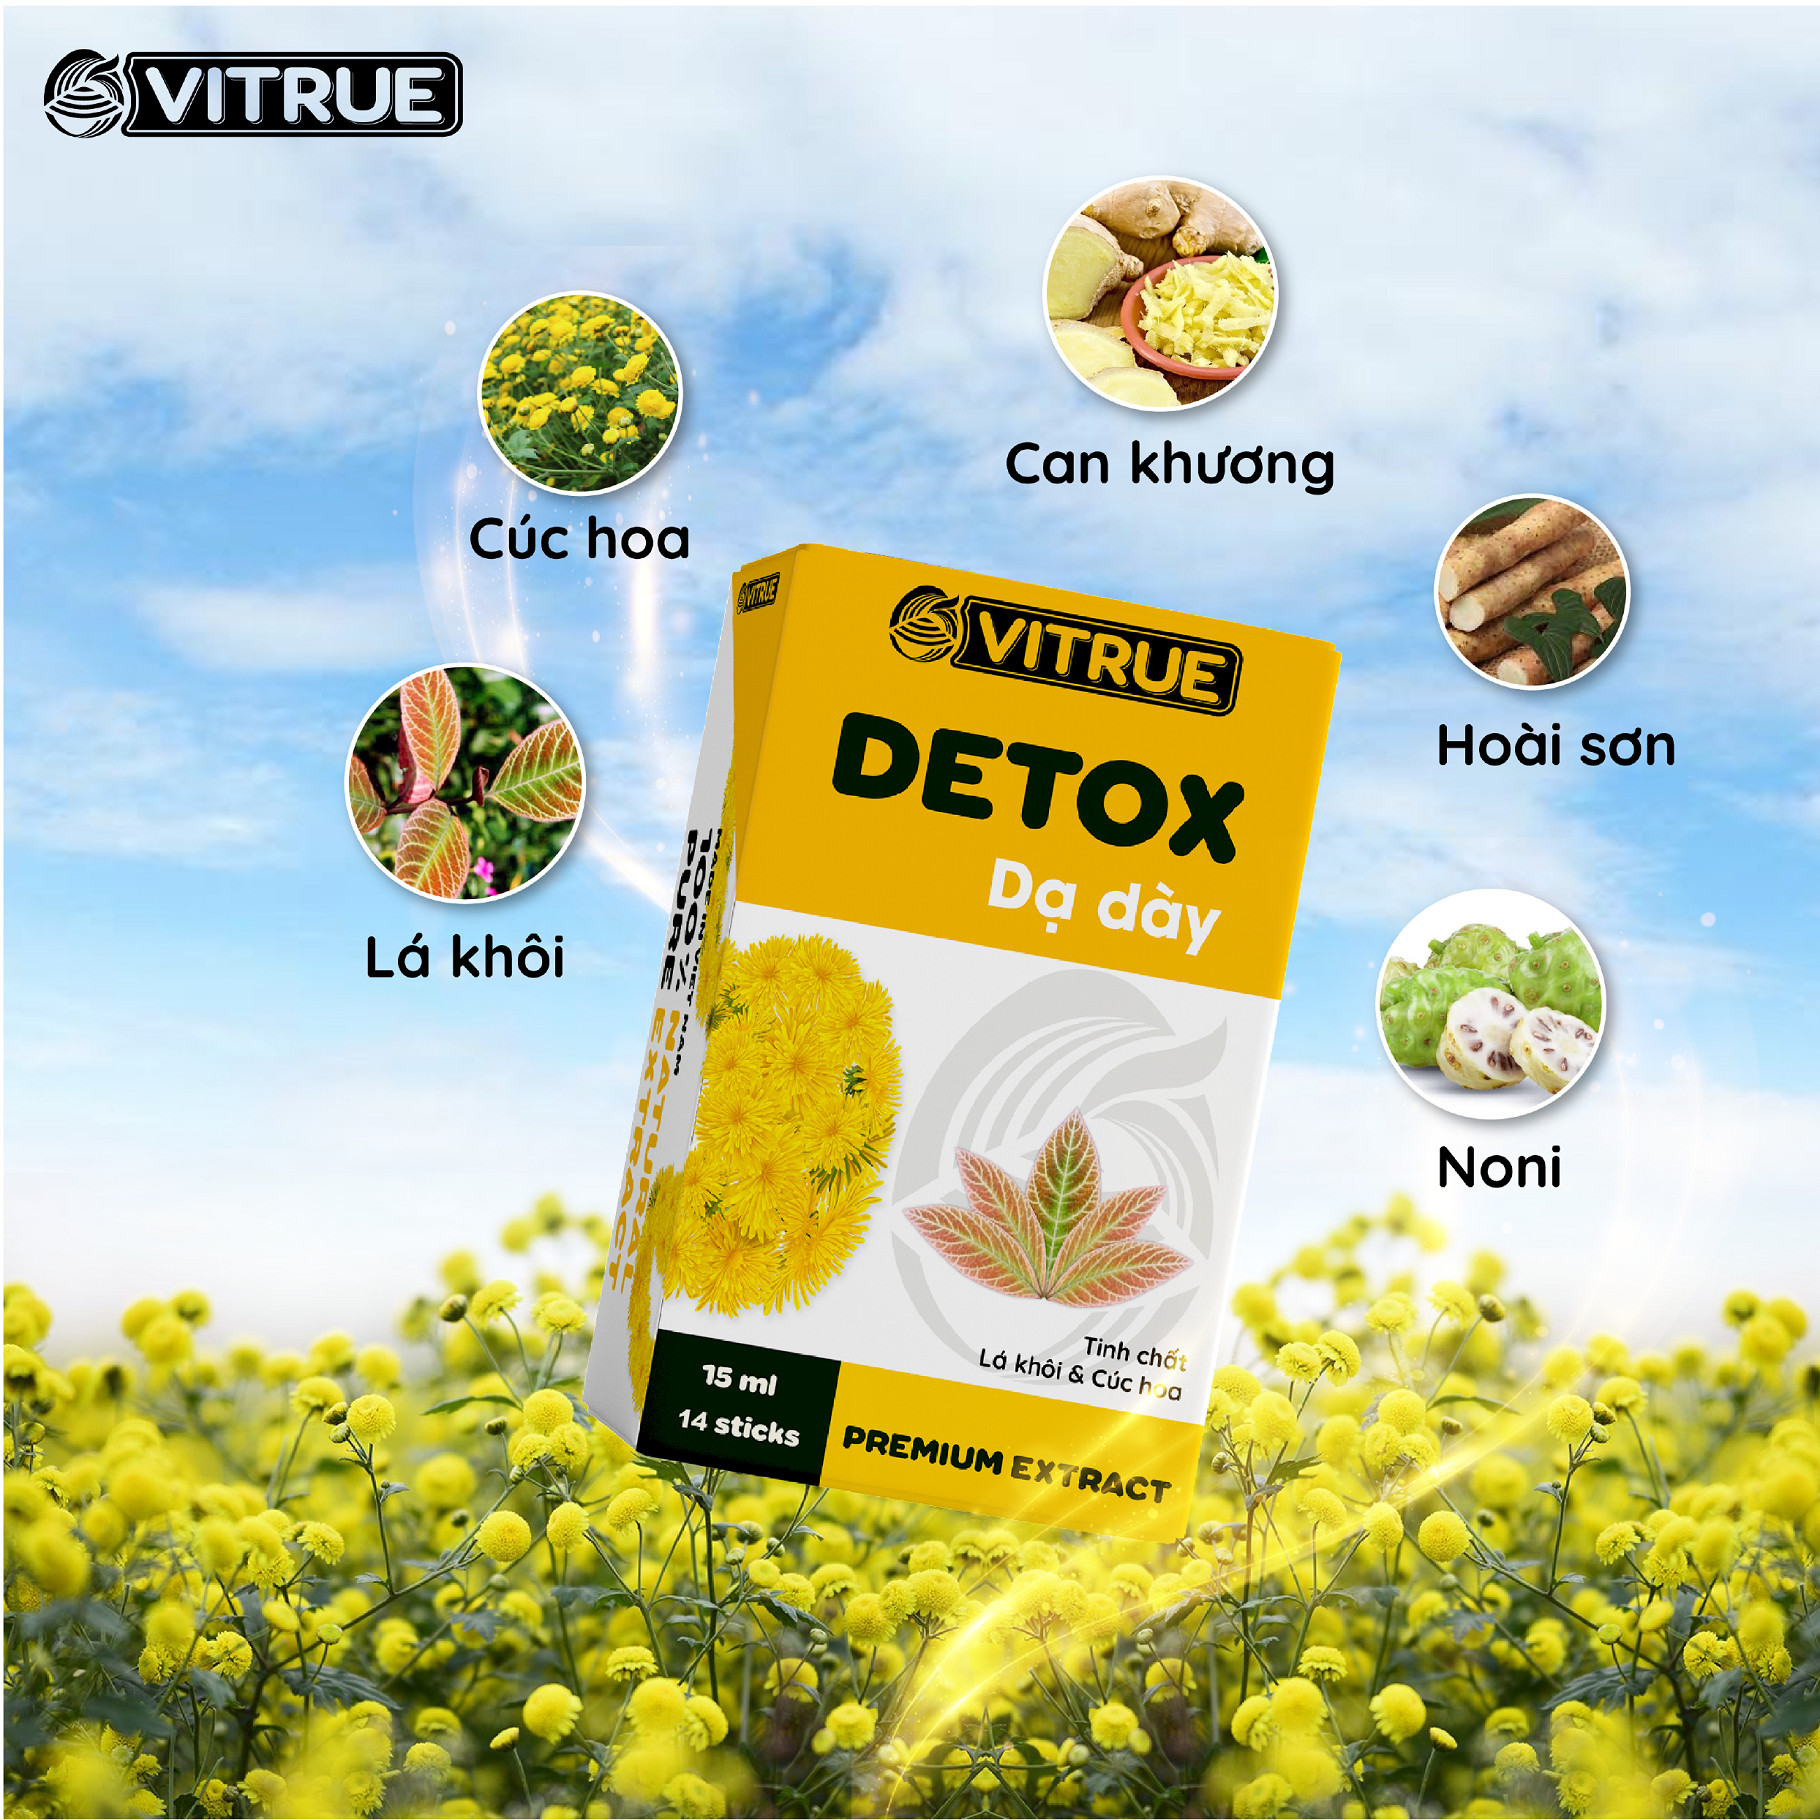 VITRUE Detox dạ dày với các thành phần từ thảo dược